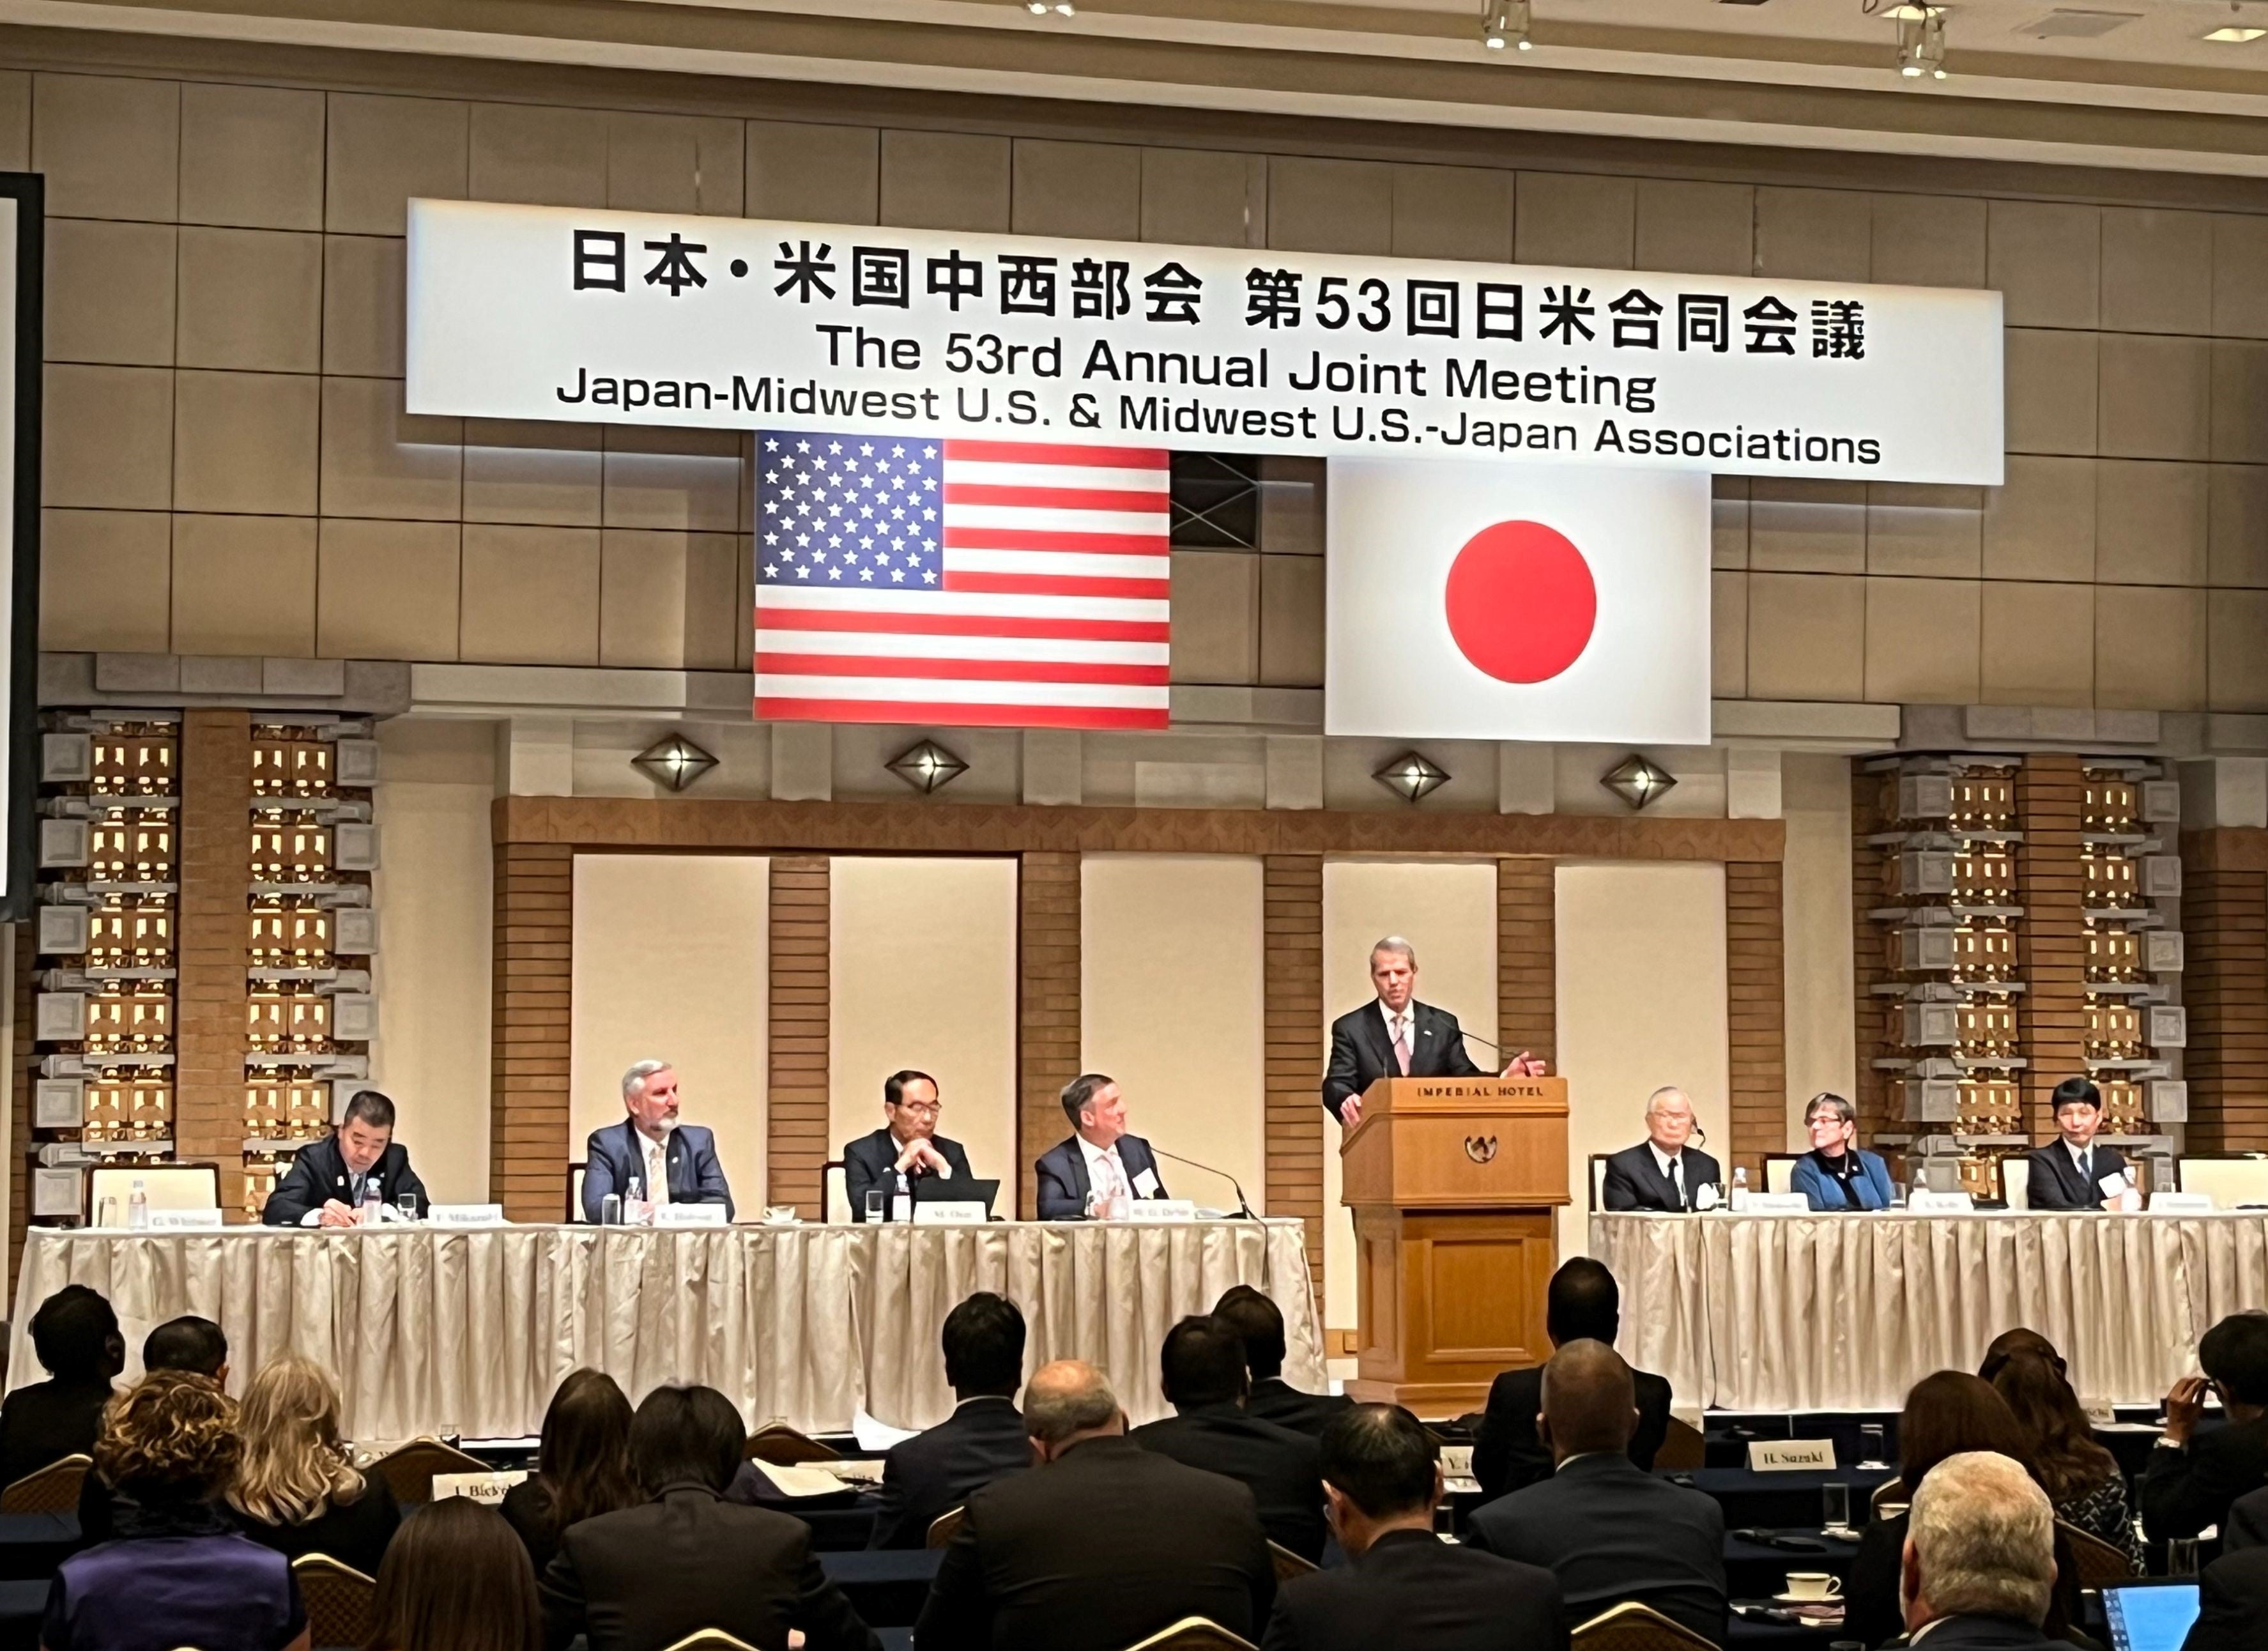 Gov. Pillen addresses participants at the Japan-Midwest U.S. Association Conference